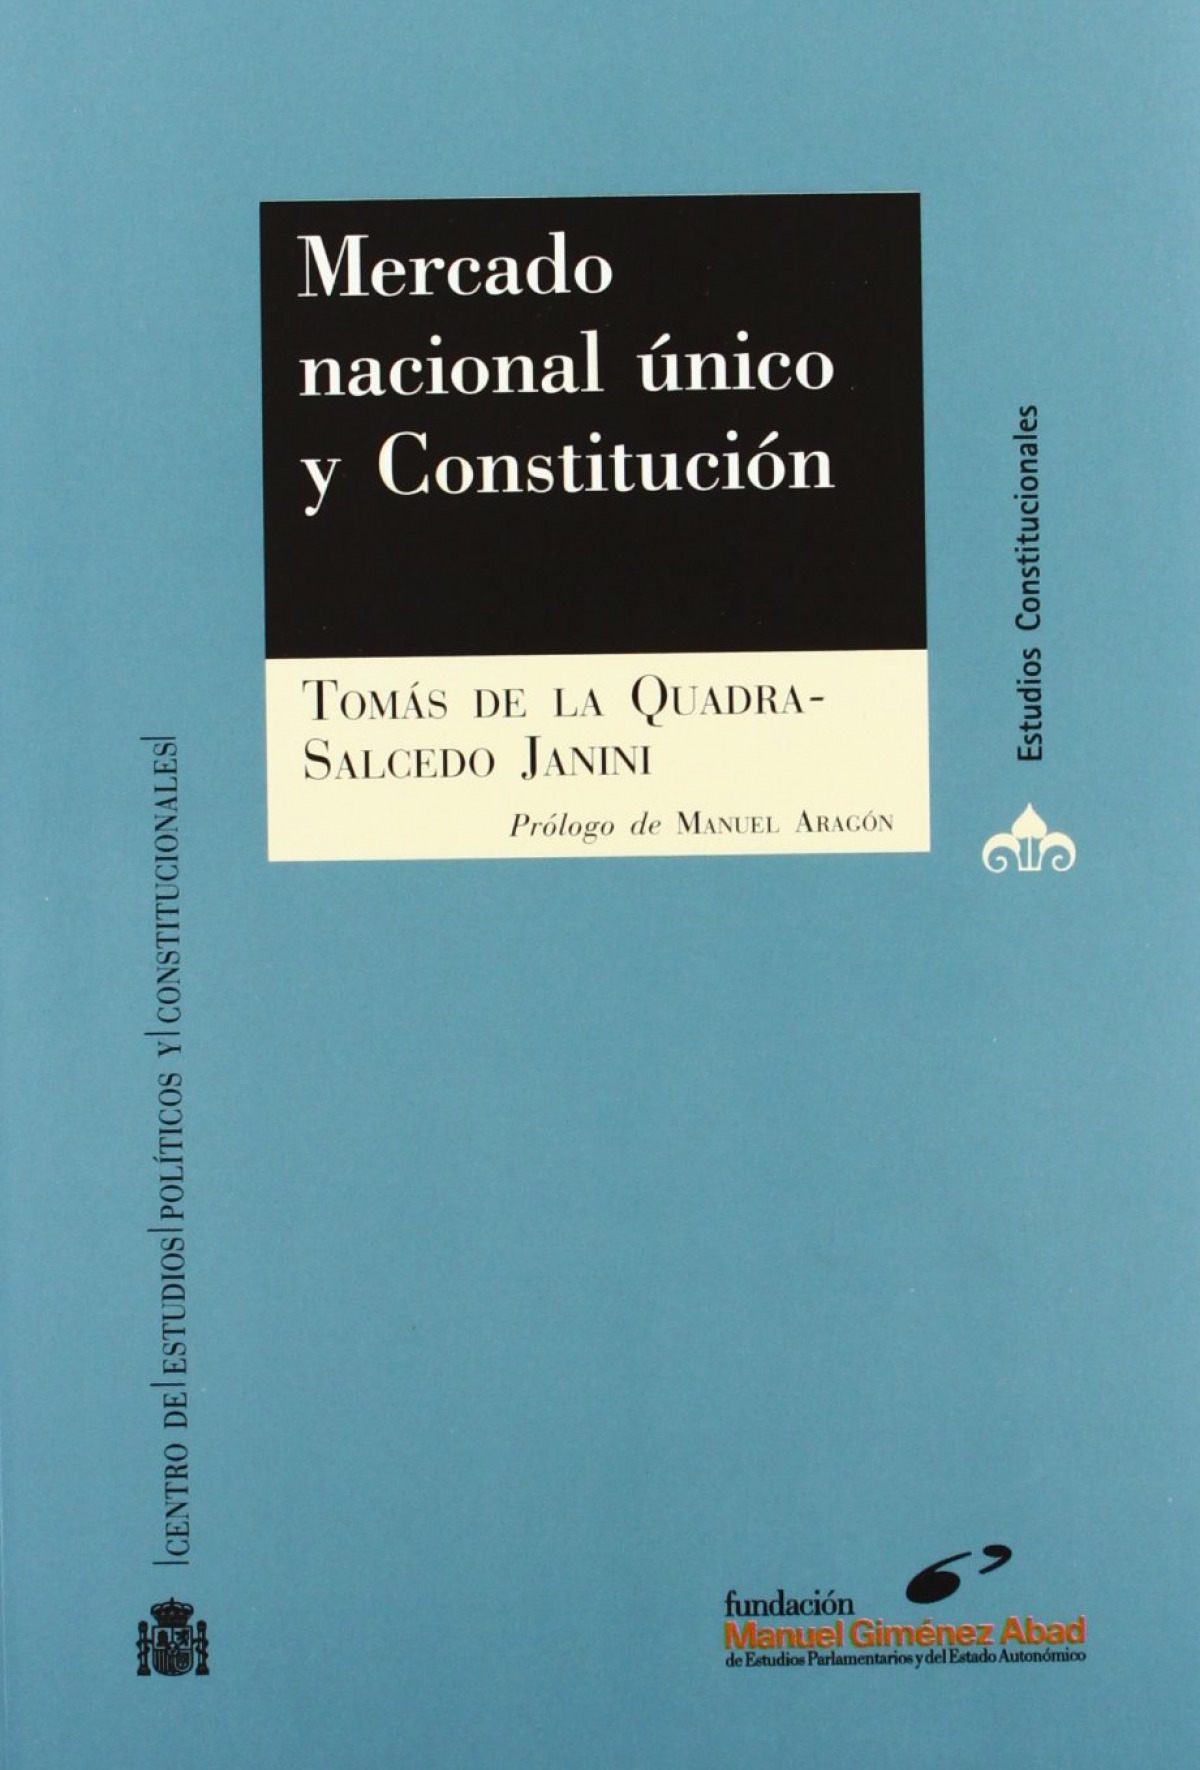 Mercado nacional único los artículos 149.11 y 139 de la Constitución - Quadra-Salcedo Janini, Tomás de la